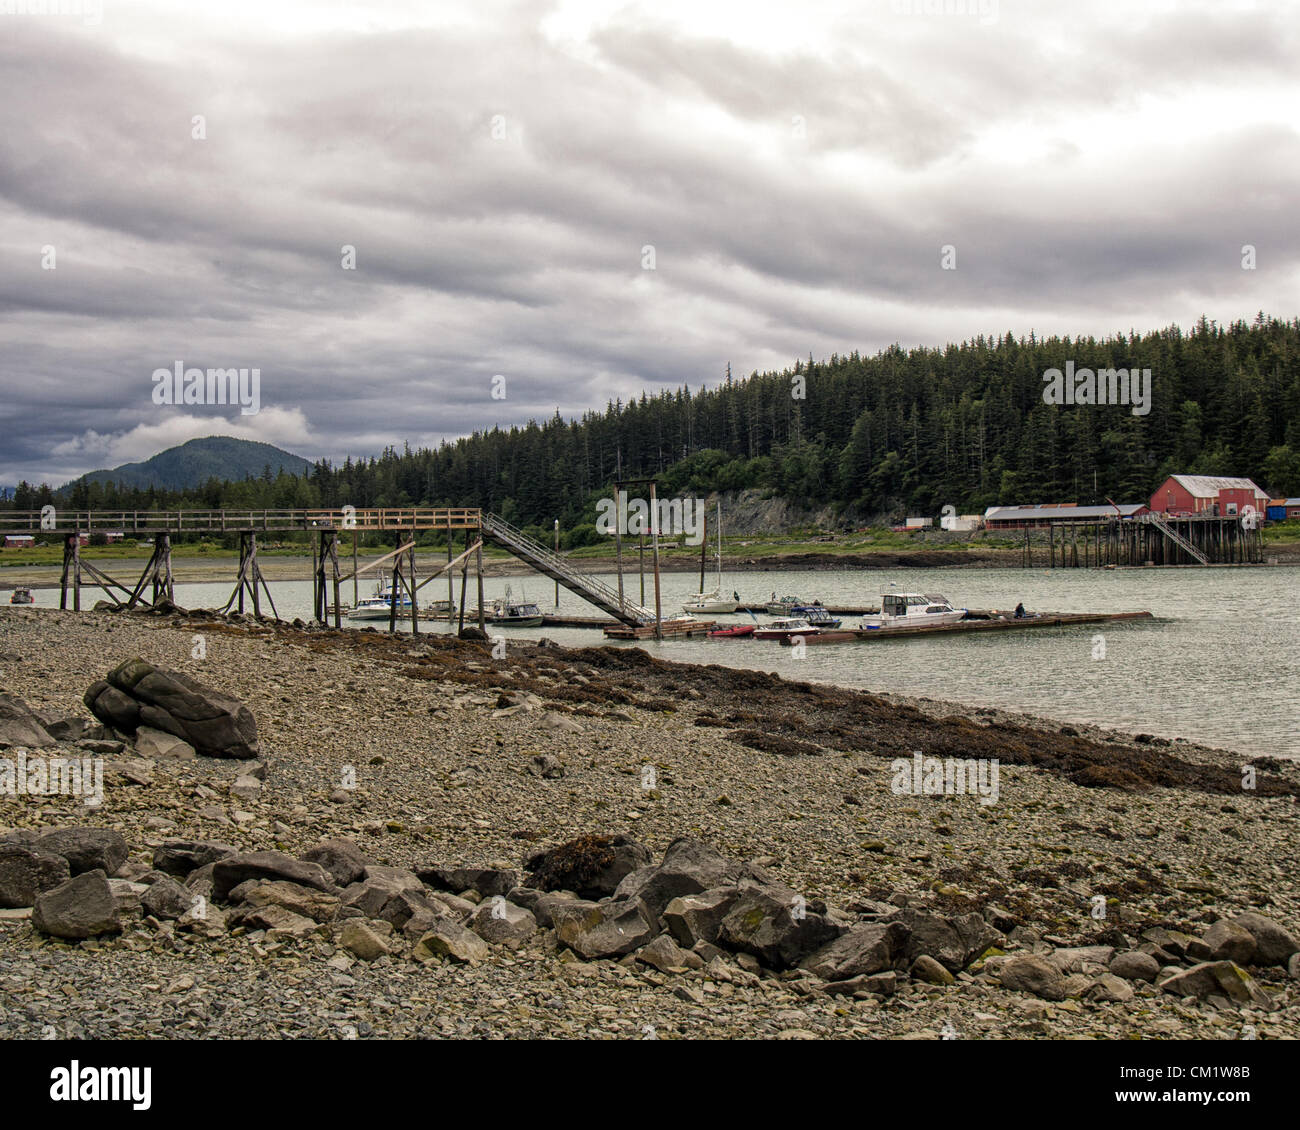 4 luglio 2012 - Haines Borough, Alaska, USA - Il ponte di legno che conduce al porto a Letnikof Cove Harbour vicino Haines, Alaska. Attraverso l'ansa sono gli edifici della vecchia fabbrica di conserve. (Credito Immagine: © Arnold Drapkin/ZUMAPRESS.com) Foto Stock